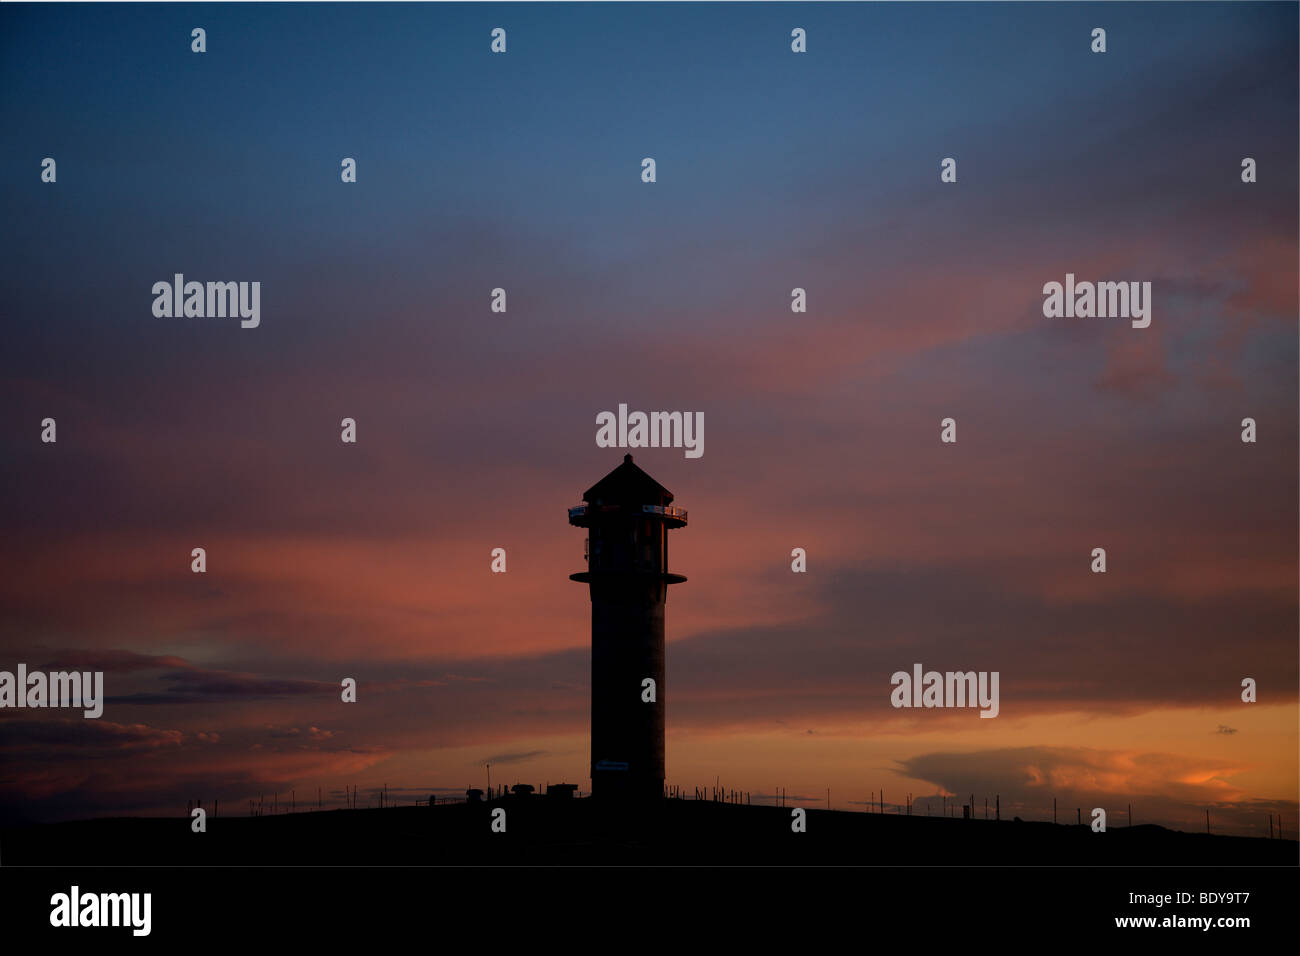 Feldberg Tower at sunset, Feldberg, Black Forest, Germany, Europe Stock Photo